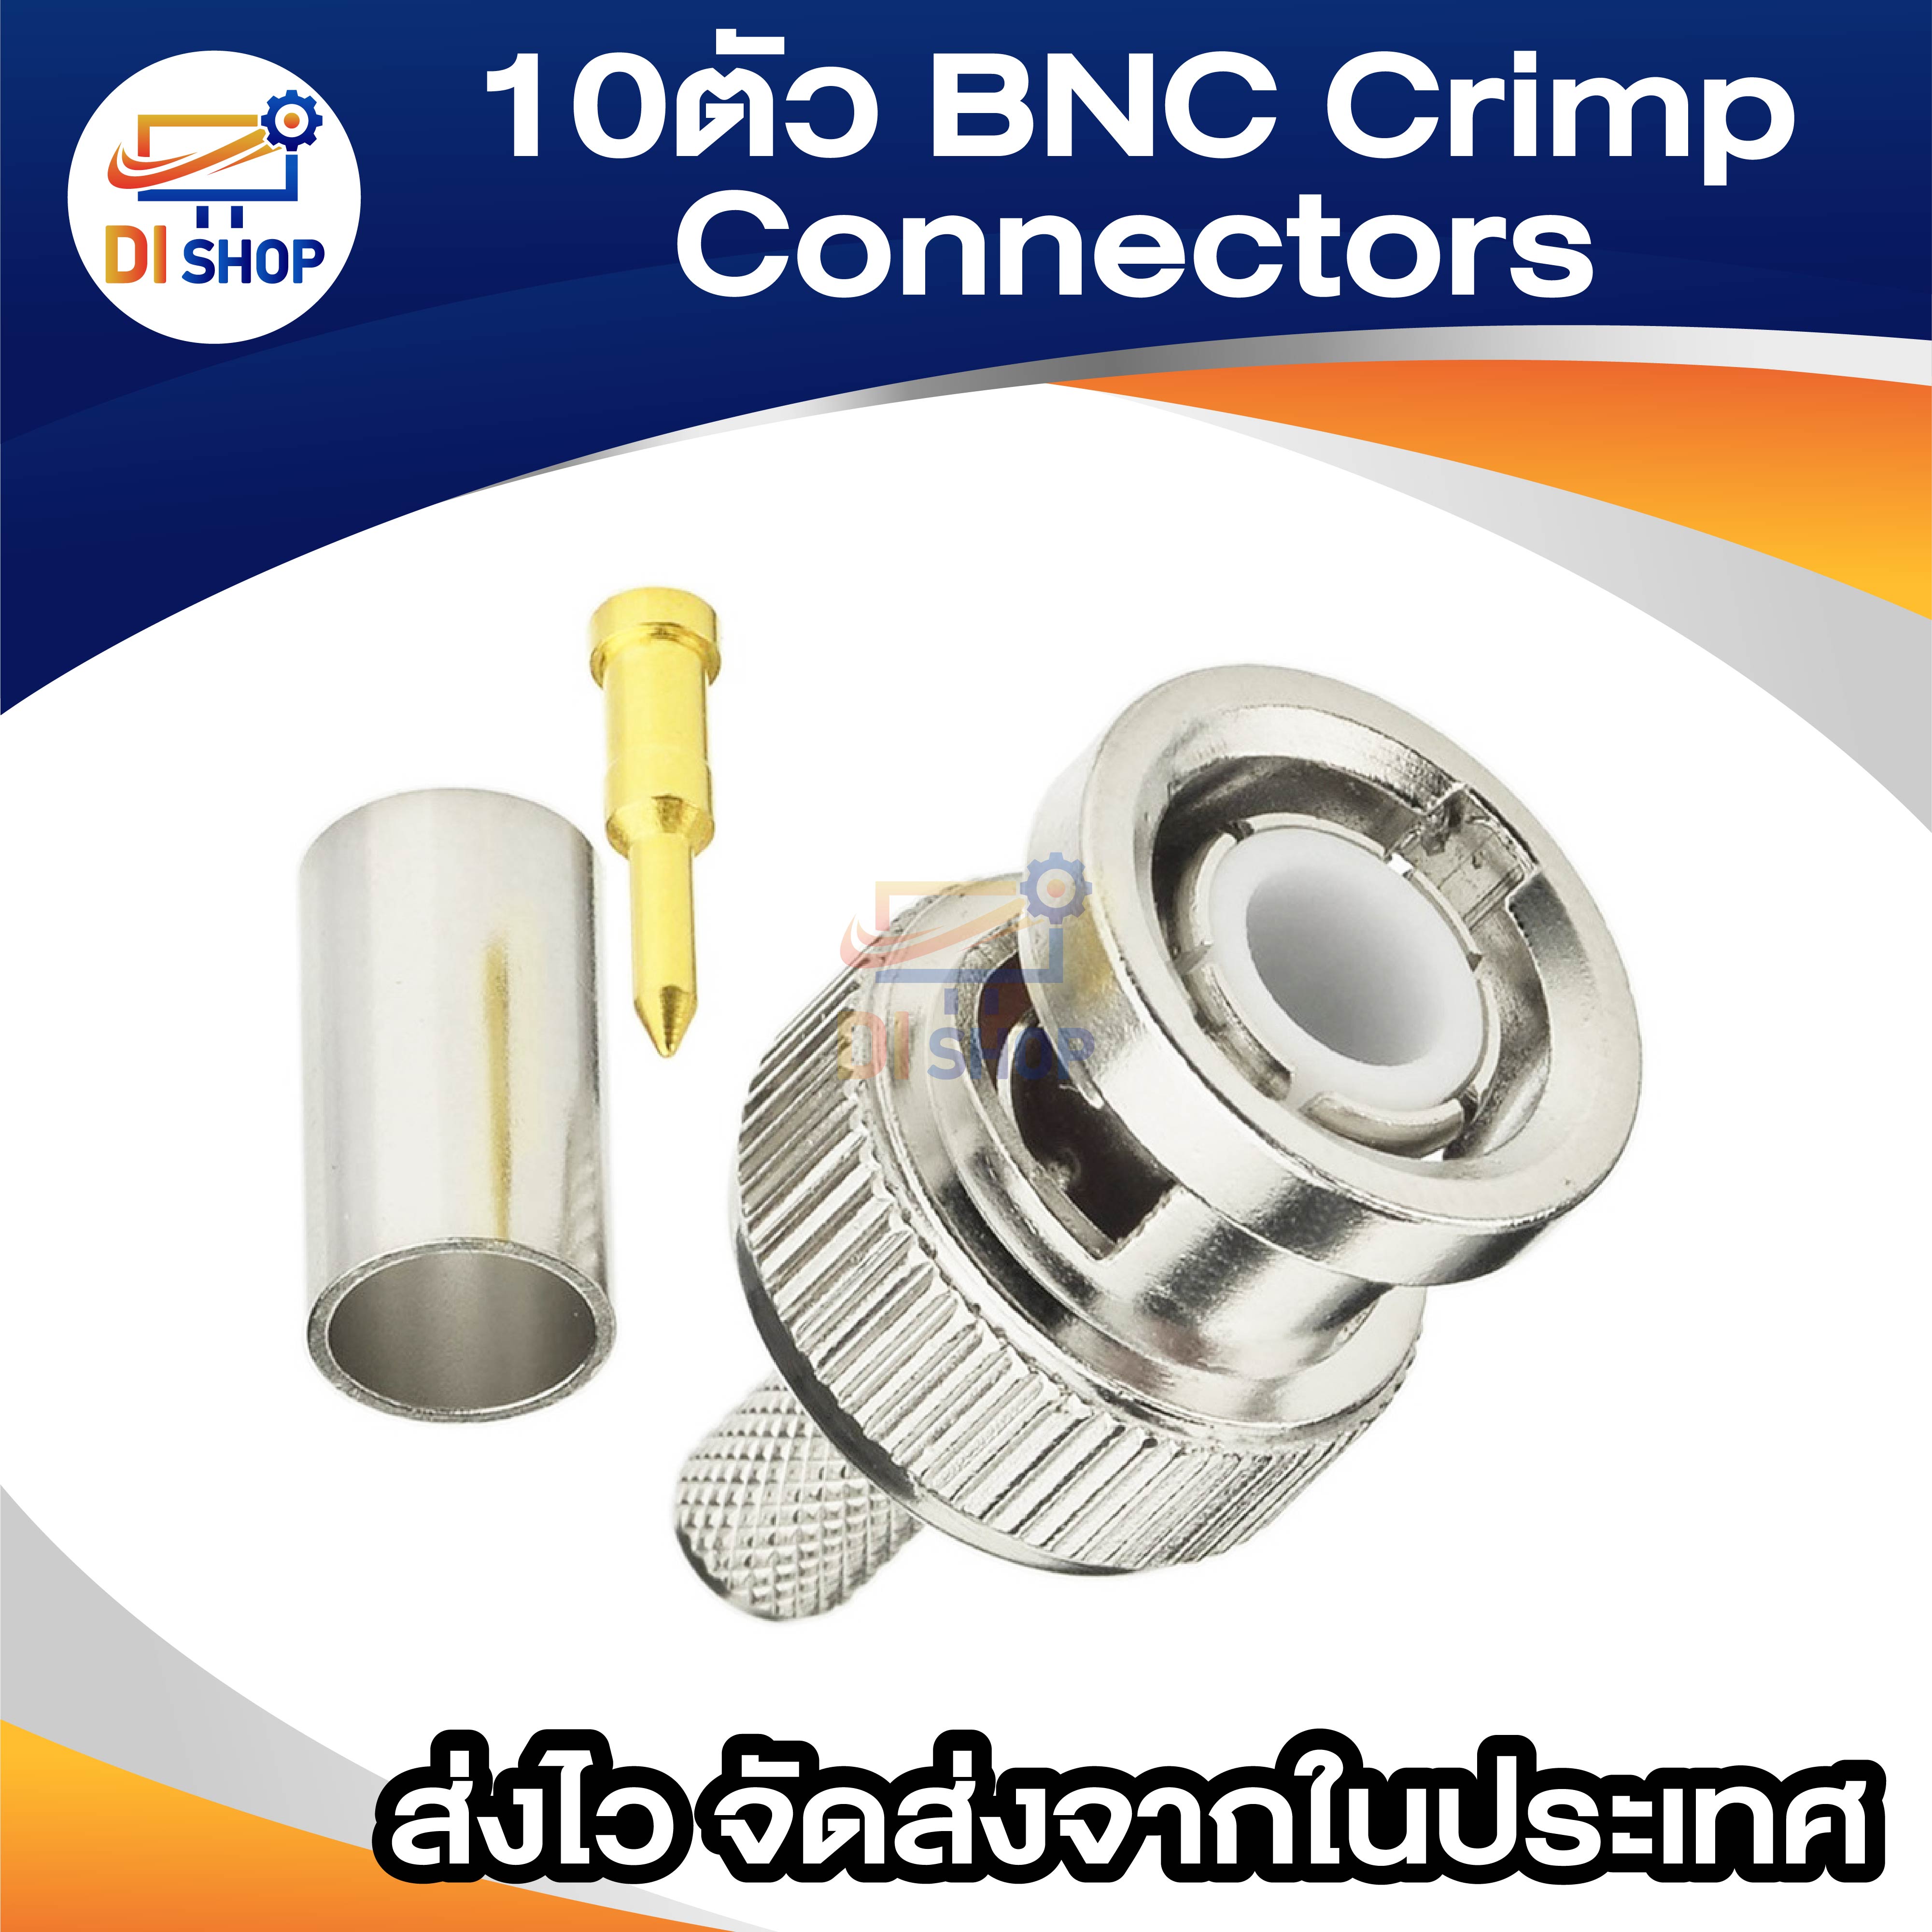 รูปภาพของ Di shop BNC Crimp Connectors for RG6 RG58 RG59 Coax Male Antenna Cable Set of 10pcs